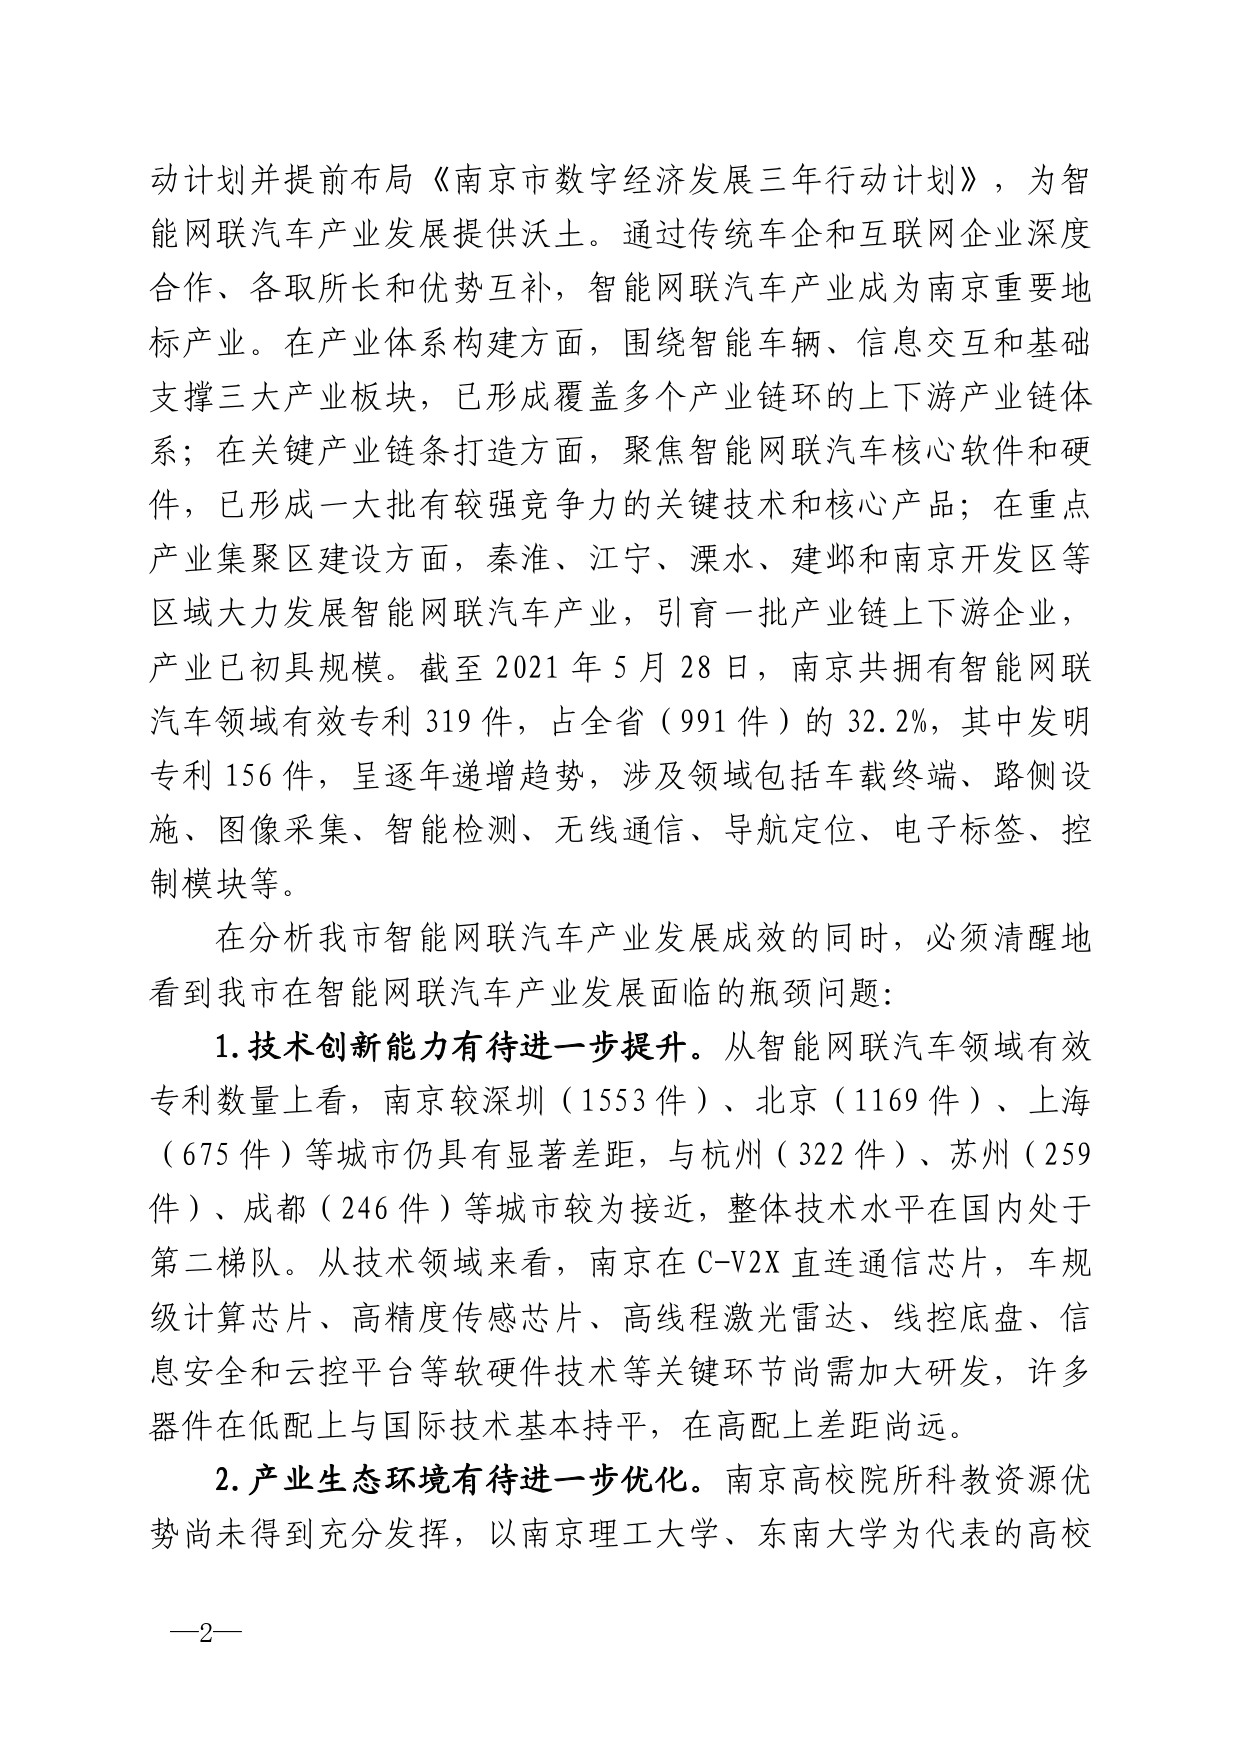 2021年第4期（关于南京智能网联汽车产业高质量发展建议）_page-0002.jpg